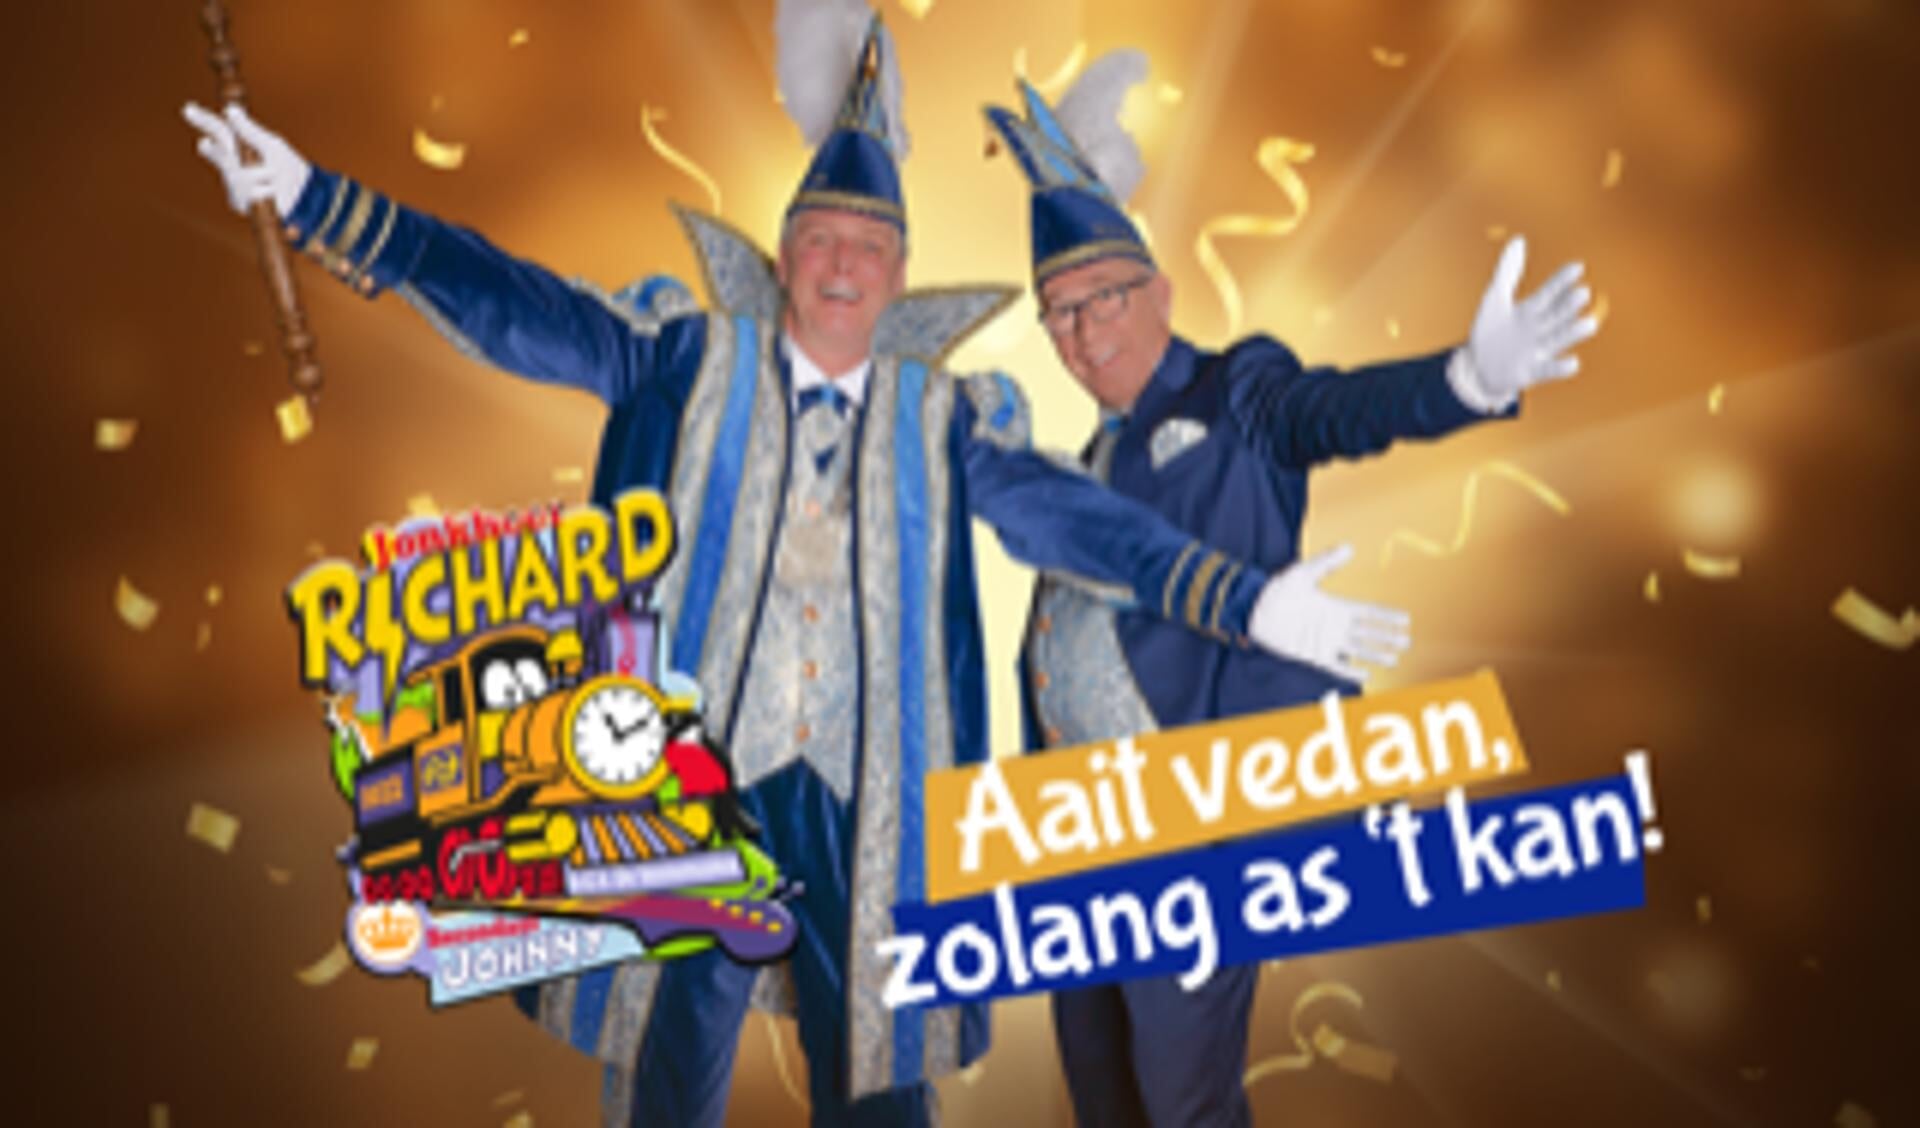 Met Jonkheer Richard en Secondant Johnny gaat het Oldenzaalse carnaval als een trein dit jaar!